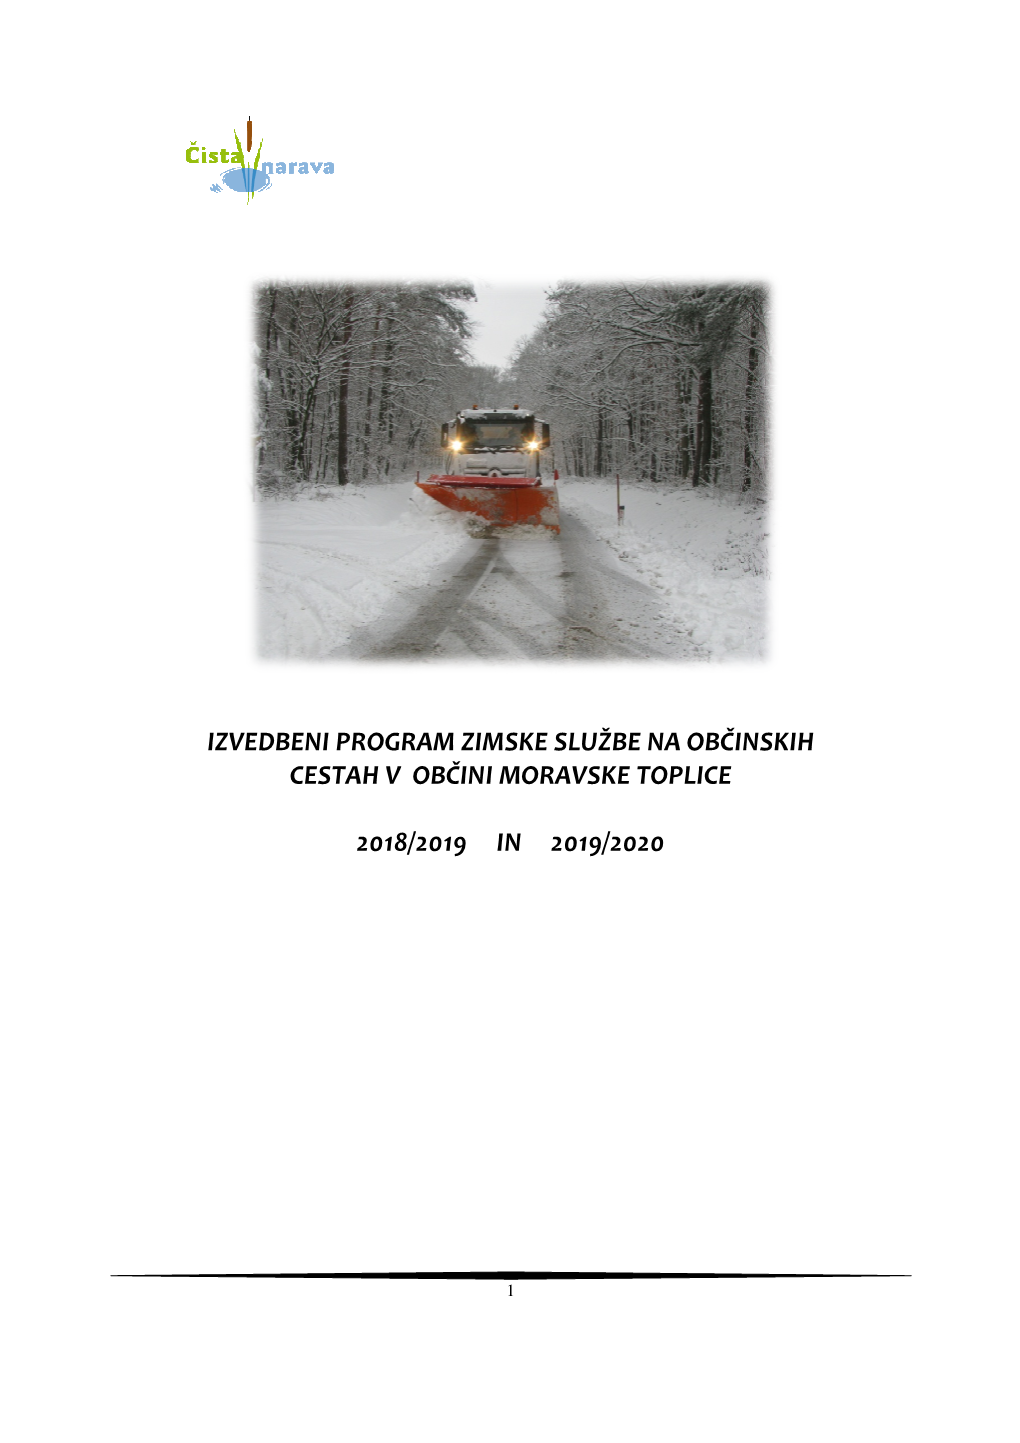 Izvedbeni Program Zimske Službe Na Občinskih Cestah V Občini Moravske Toplice